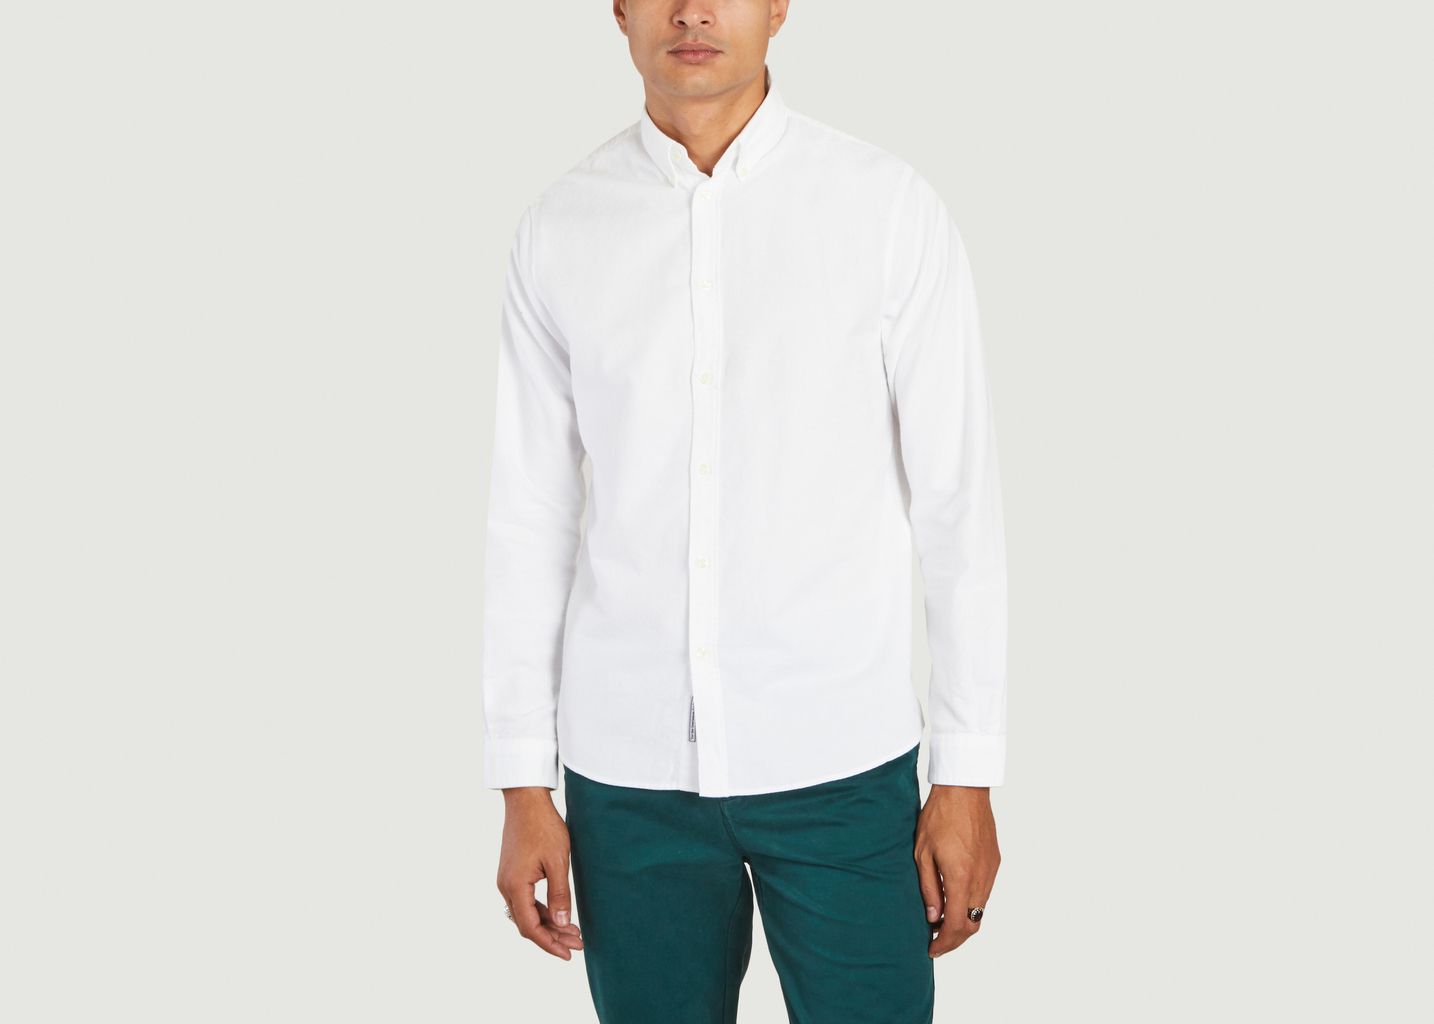 Classic Oxford cotton shirt - Cuisse de Grenouille